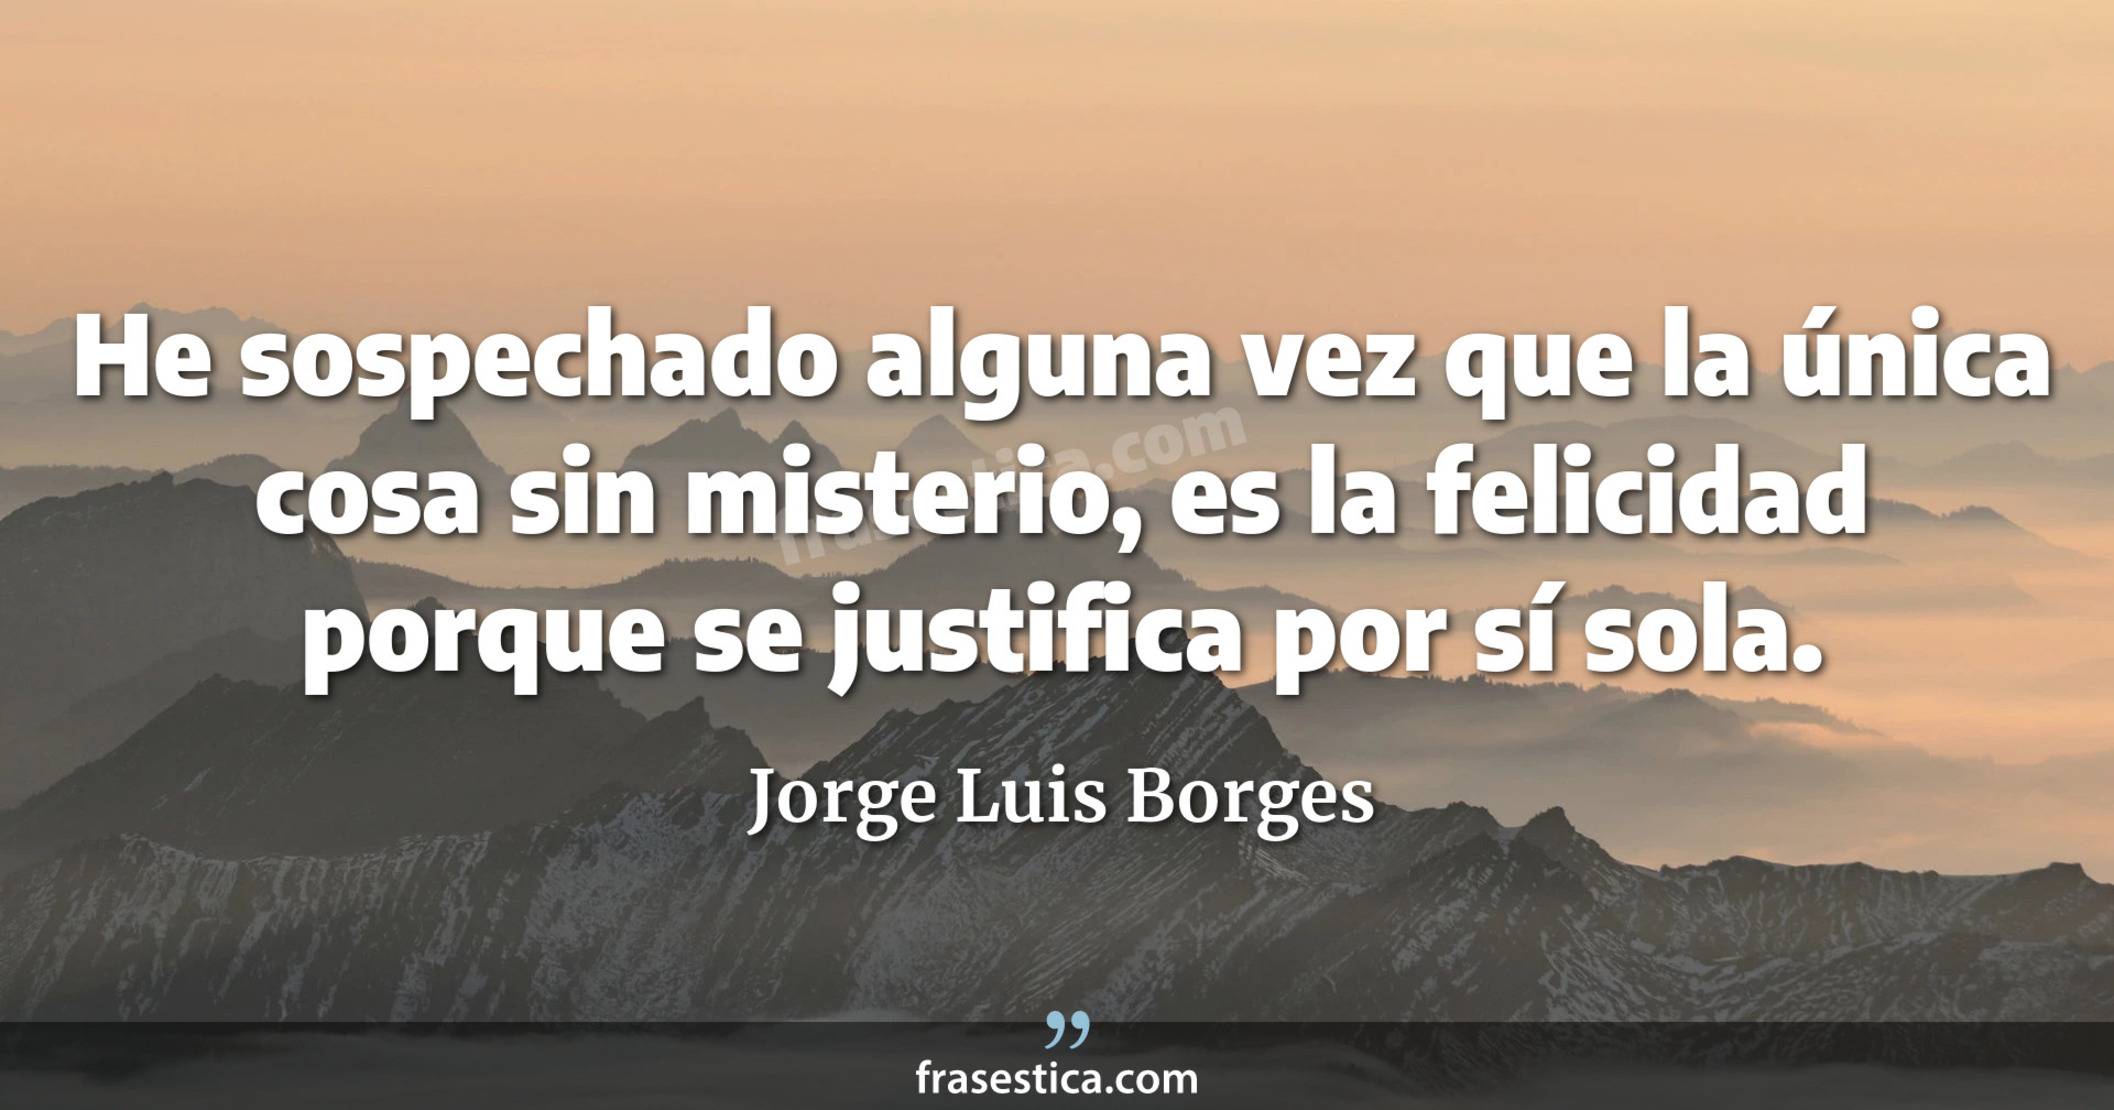 He sospechado alguna vez que la única cosa sin misterio, es la felicidad porque se justifica por sí sola. - Jorge Luis Borges